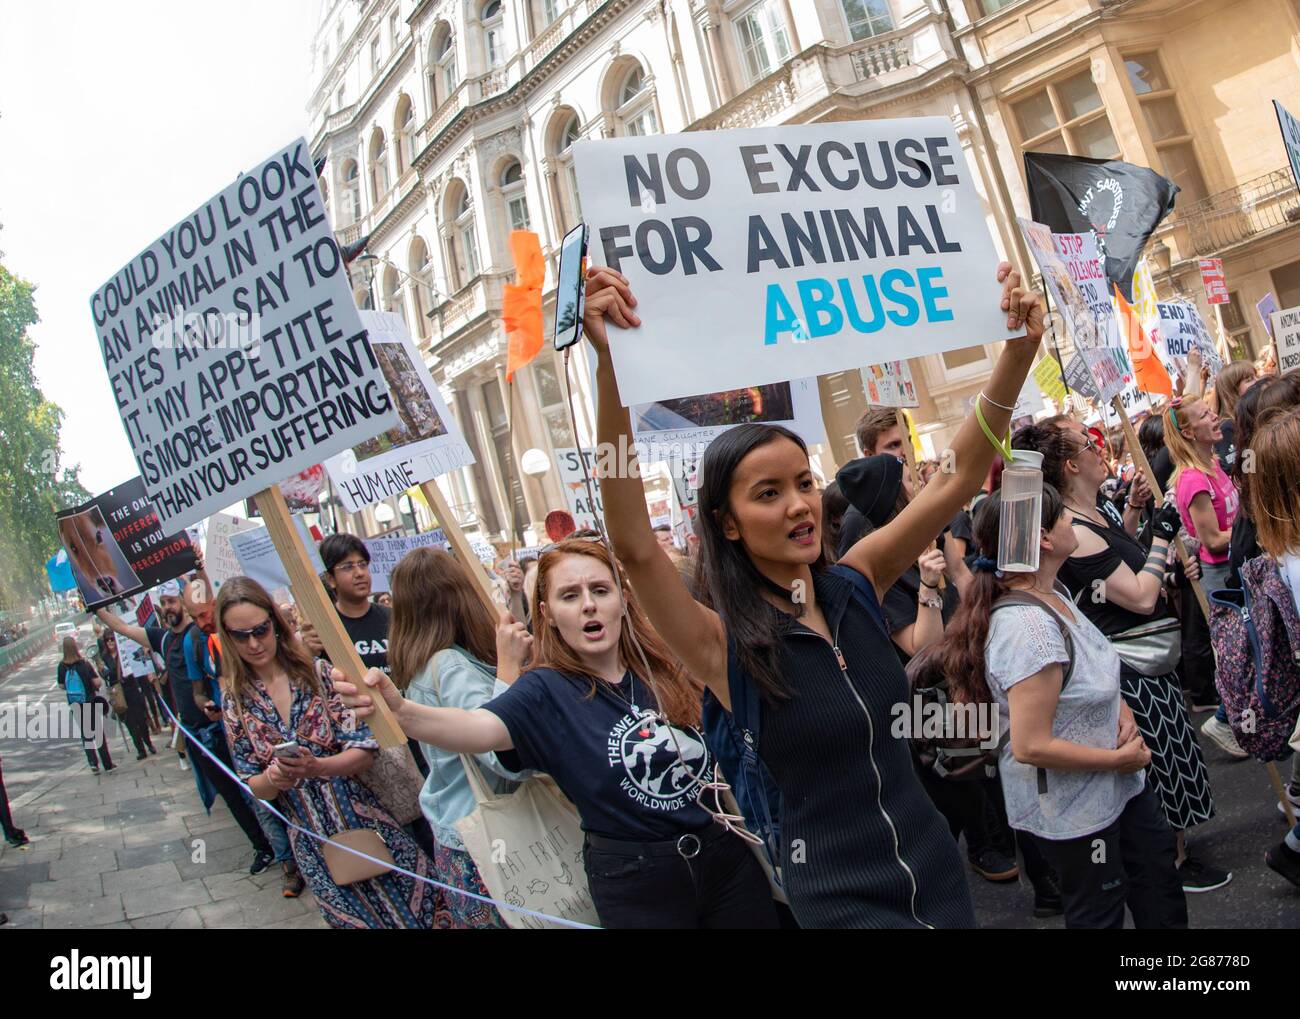 Die Offiziellen Tierrechte März London 2019. Aktivisten marschieren am 17. August 2019 durch die britische Hauptstadt. Keine Entschuldigung für Tiermissbrauch. Stockfoto